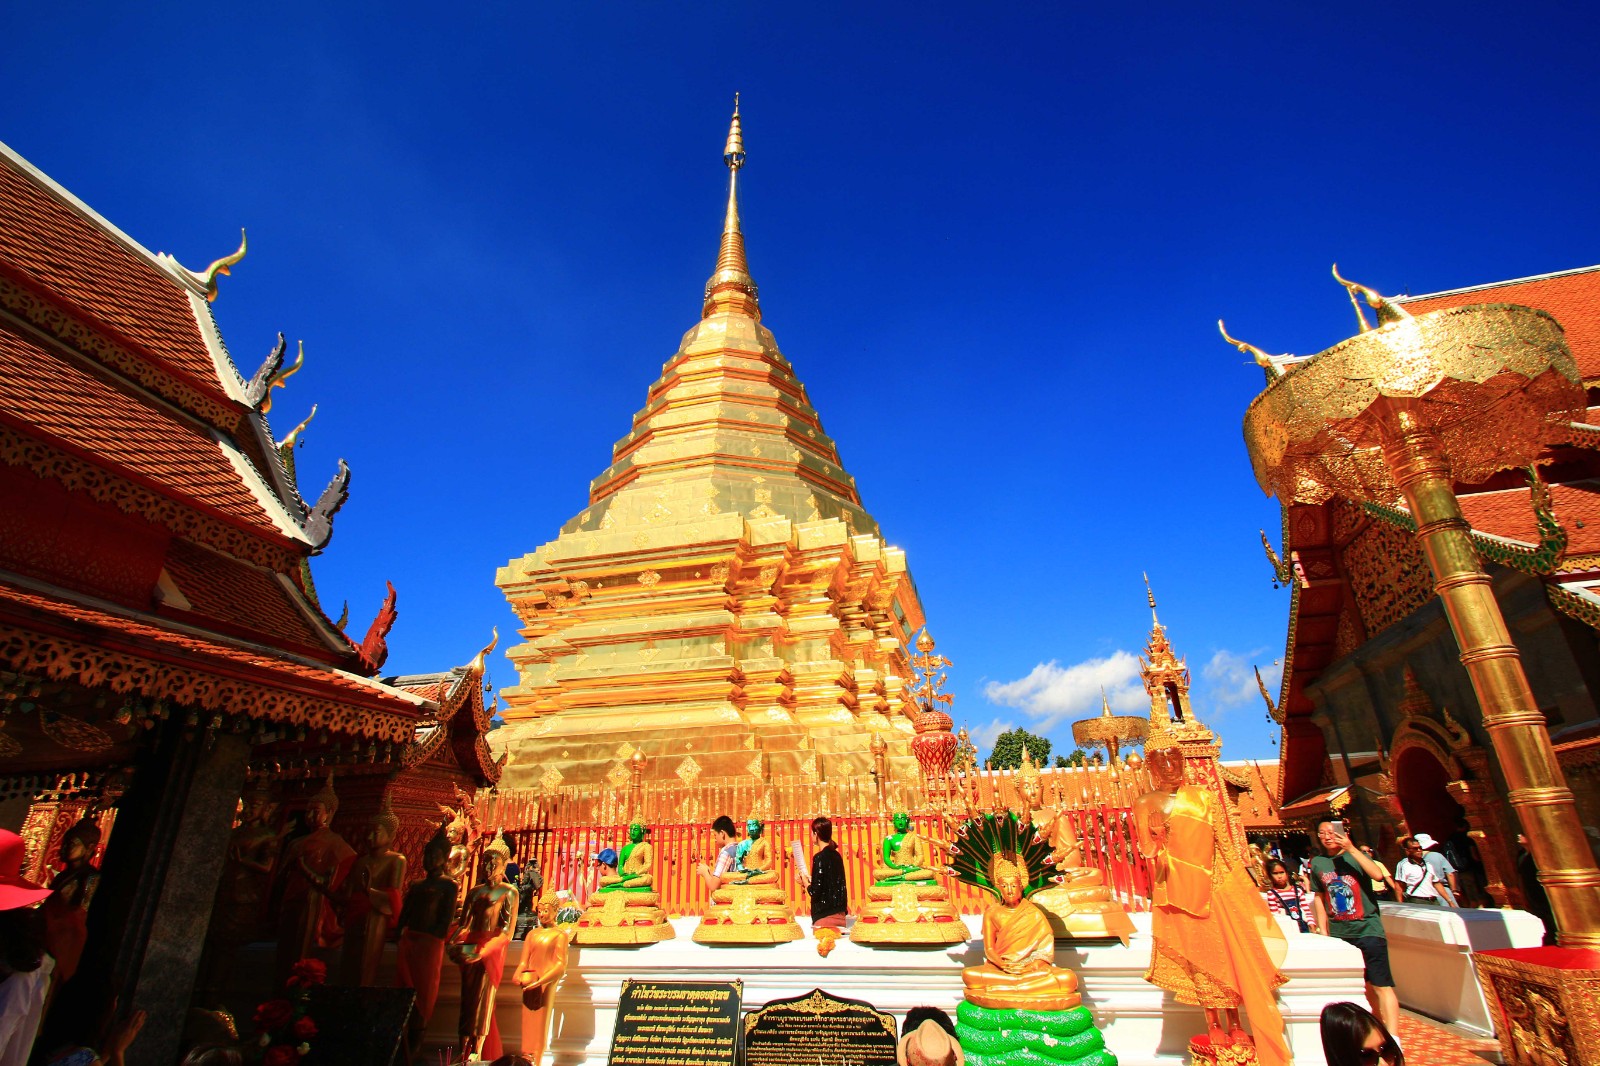 IMG_3129-双龙寺是泰国著名的佛教避暑胜地，是一座由白象选址、皇室建造，充满传奇色彩的庙宇。是到了清迈一定要去的景点之一。金光闪耀，显得相当突出，它位于海拔三千多英尺上的素帖山上，由山上往下看正可俯视清迈。由于山路两旁有两只金龙守护，所以便叫做“双龙寺”。.jpg